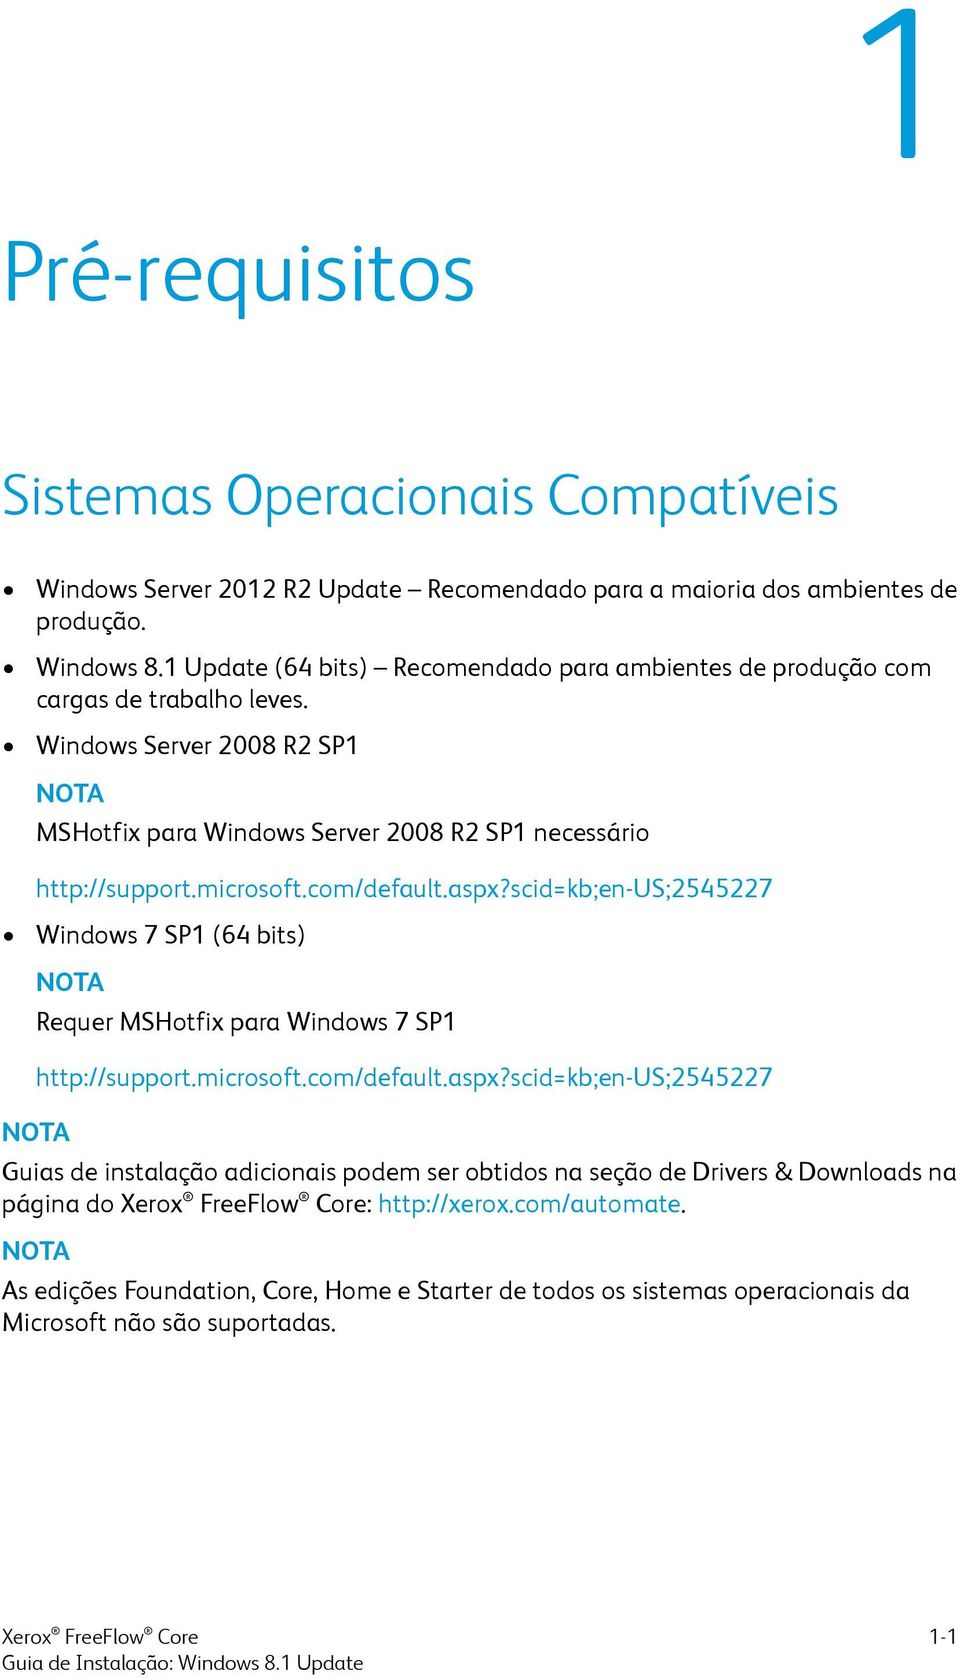 microsoft.com/default.aspx?scid=kb;en-us;2545227 Windows 7 SP1 (64 bits) NOTA NOTA Requer MSHotfix para Windows 7 SP1 http://support.microsoft.com/default.aspx?scid=kb;en-us;2545227 Guias de instalação adicionais podem ser obtidos na seção de Drivers & Downloads na página do : http://xerox.